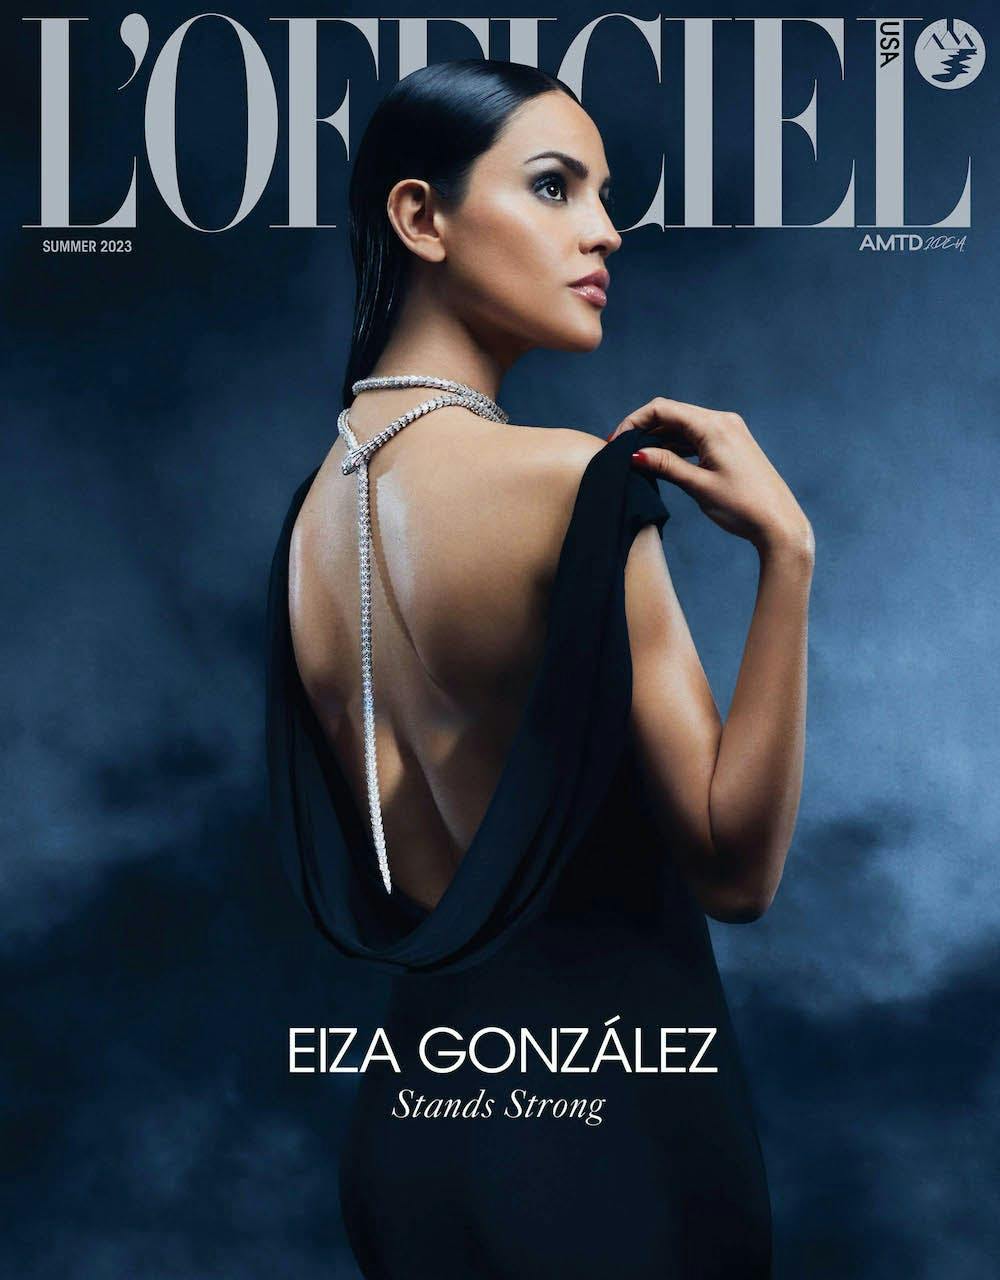 Eiza González Cover